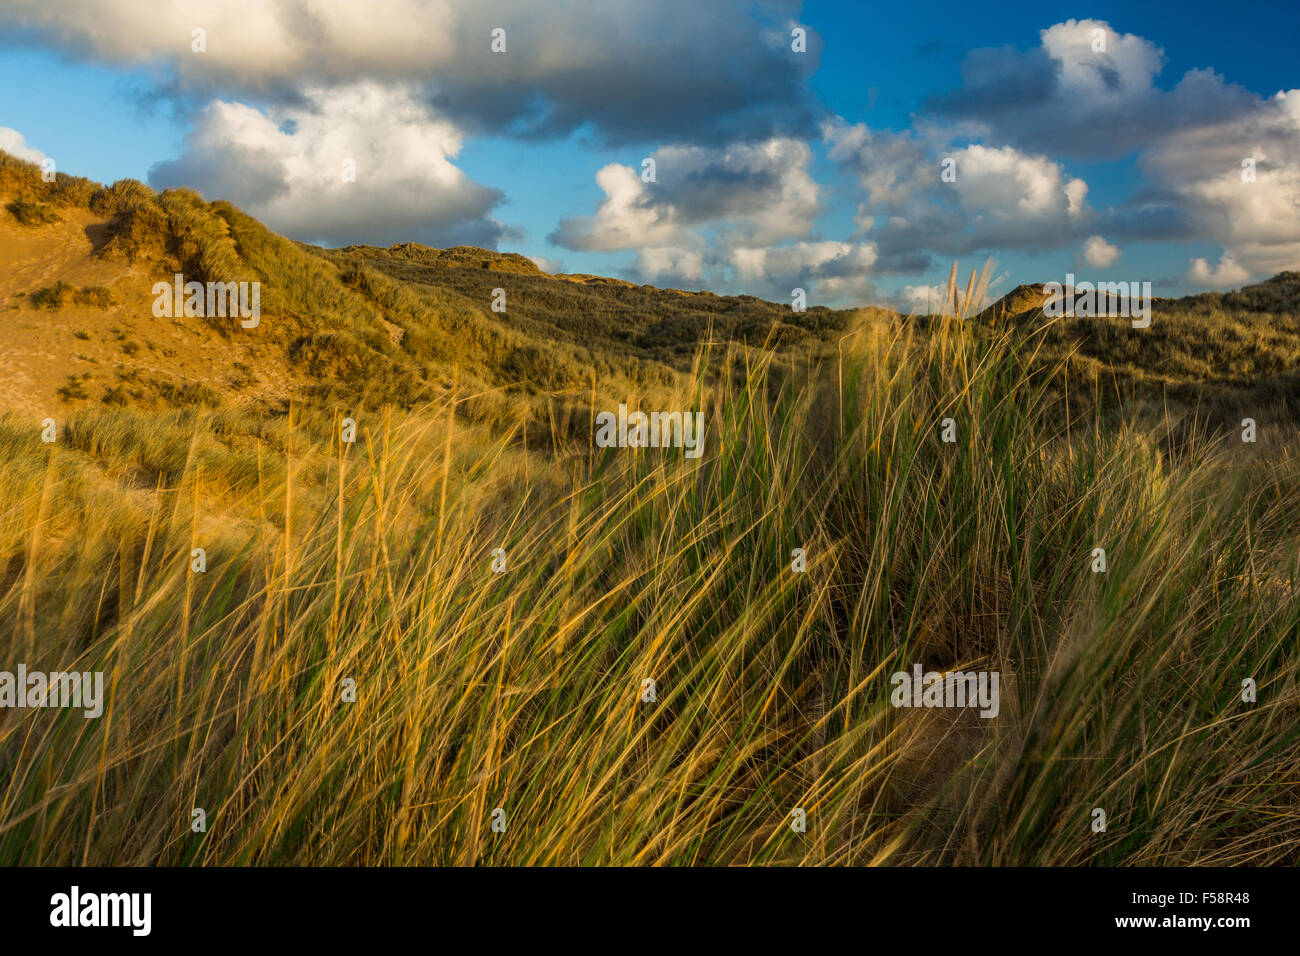 L'ammophile des graminées et des dunes de sable située à Baie de Holywell à Cornwall au cours de la lumière du soir près de coucher du soleil. Banque D'Images